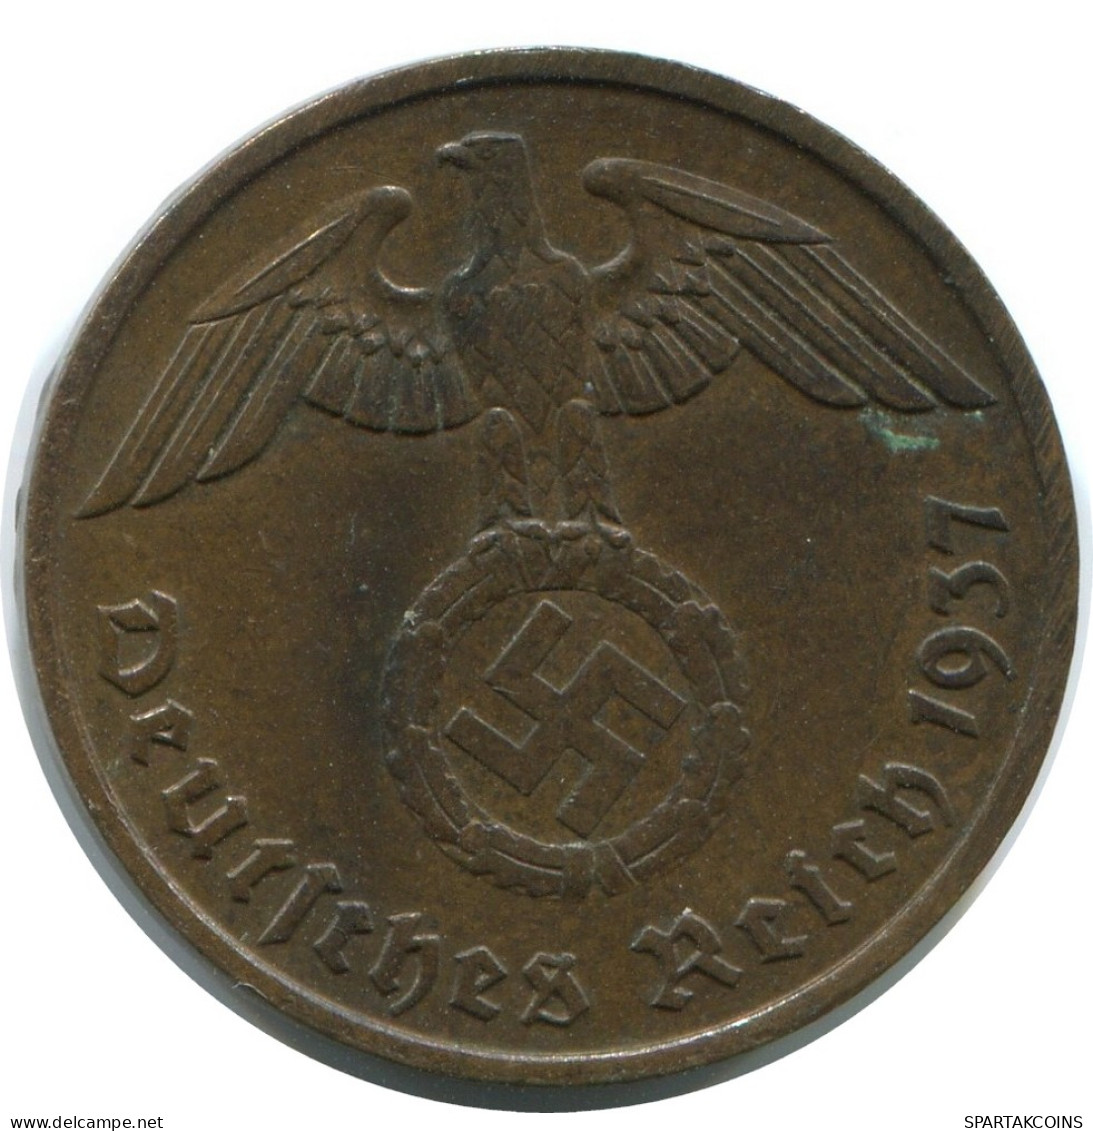 2 REICHSPFENNIG 1937 A GERMANY Coin #AD855.9.U - 2 Renten- & 2 Reichspfennig